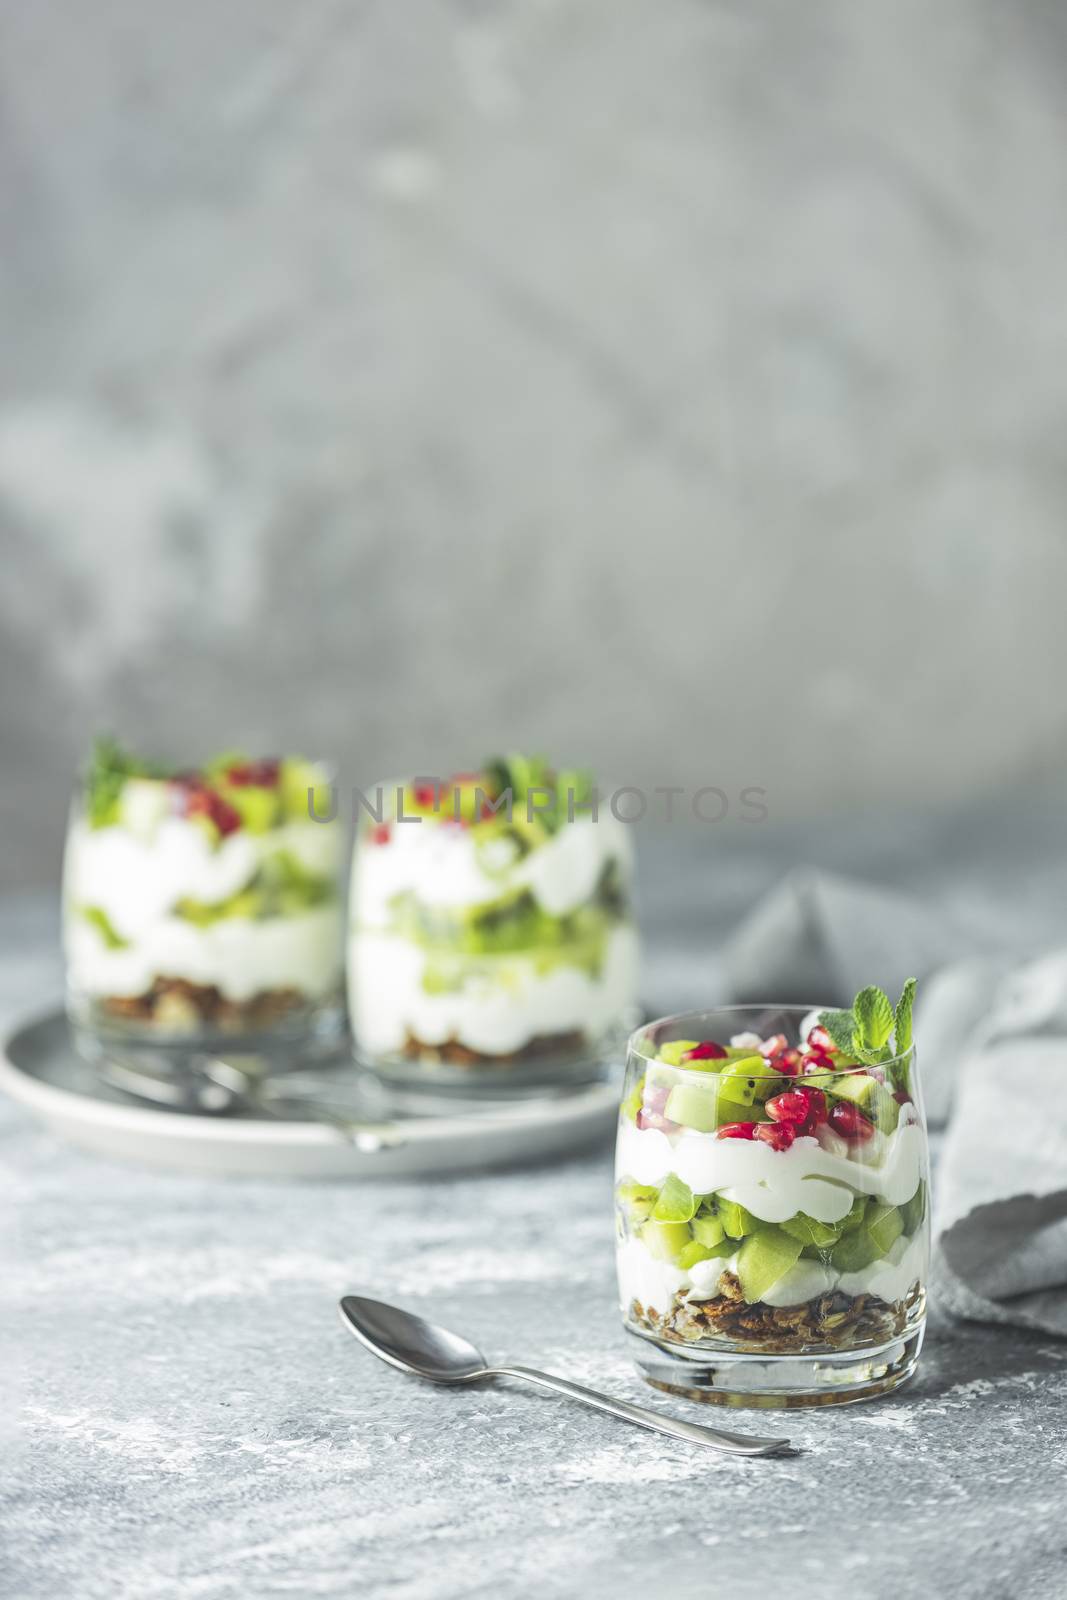 Kiwi parfait dessert in glass with ingredients. Yogurt, granola  by ArtSvitlyna